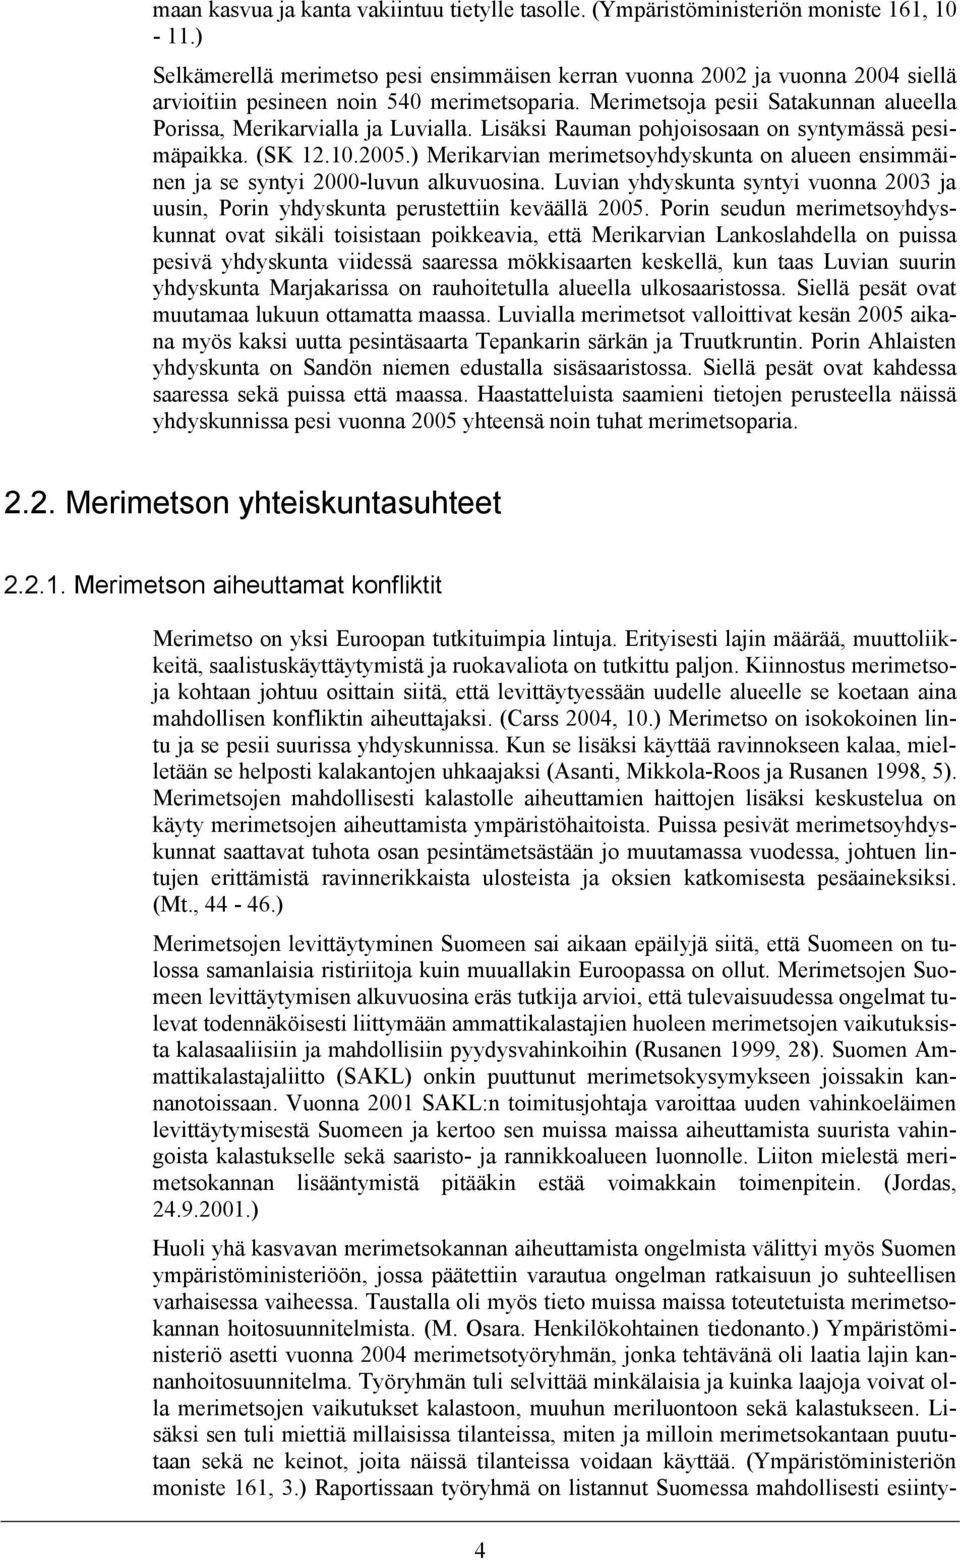 Merimetsoja pesii Satakunnan alueella Porissa, Merikarvialla ja Luvialla. Lisäksi Rauman pohjoisosaan on syntymässä pesimäpaikka. (SK 12.10.2005.